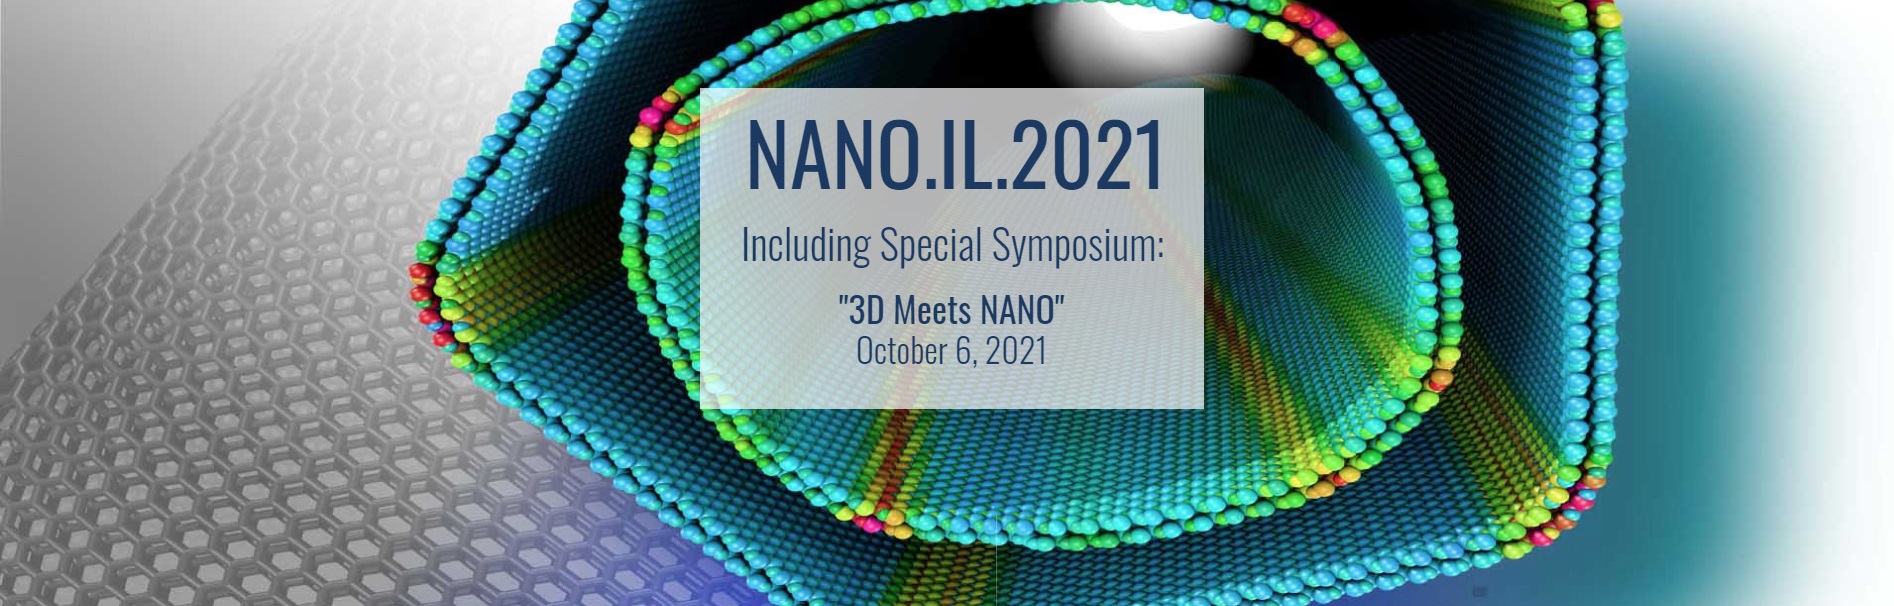 The NANO.IL.2021 Conference & Exhibition JLM